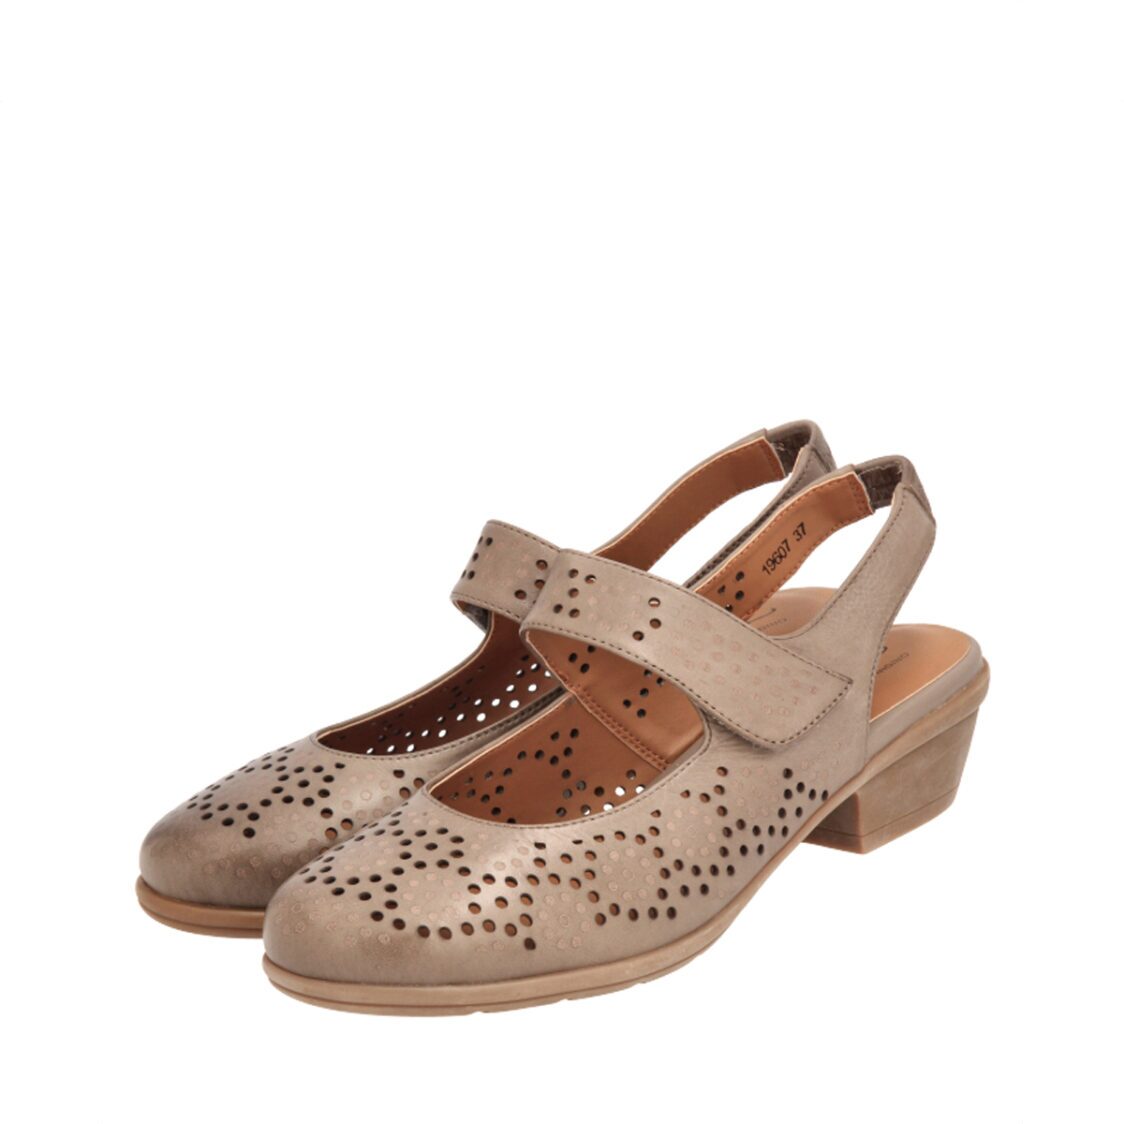 Barani 19607 Khaki Leather Heeled Sandals Short Perforated